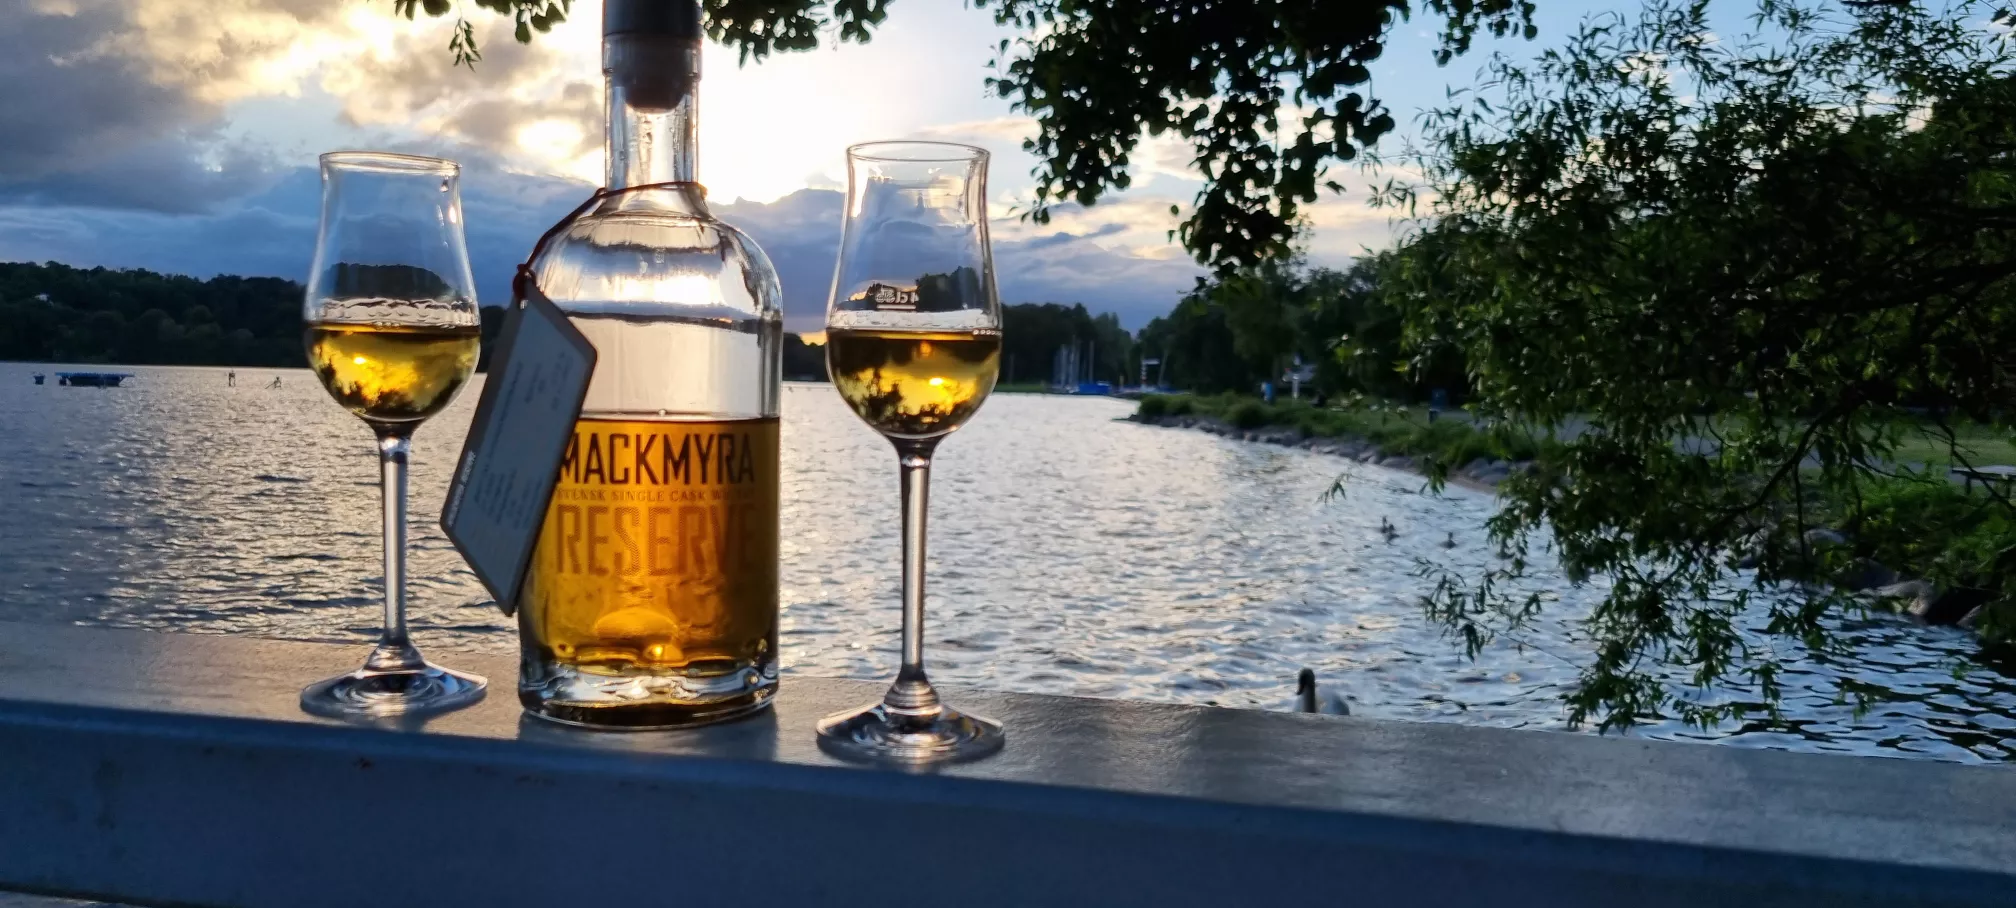 Whisky am Wasser - Die Whisky Sorten von GEIST&RAUCH